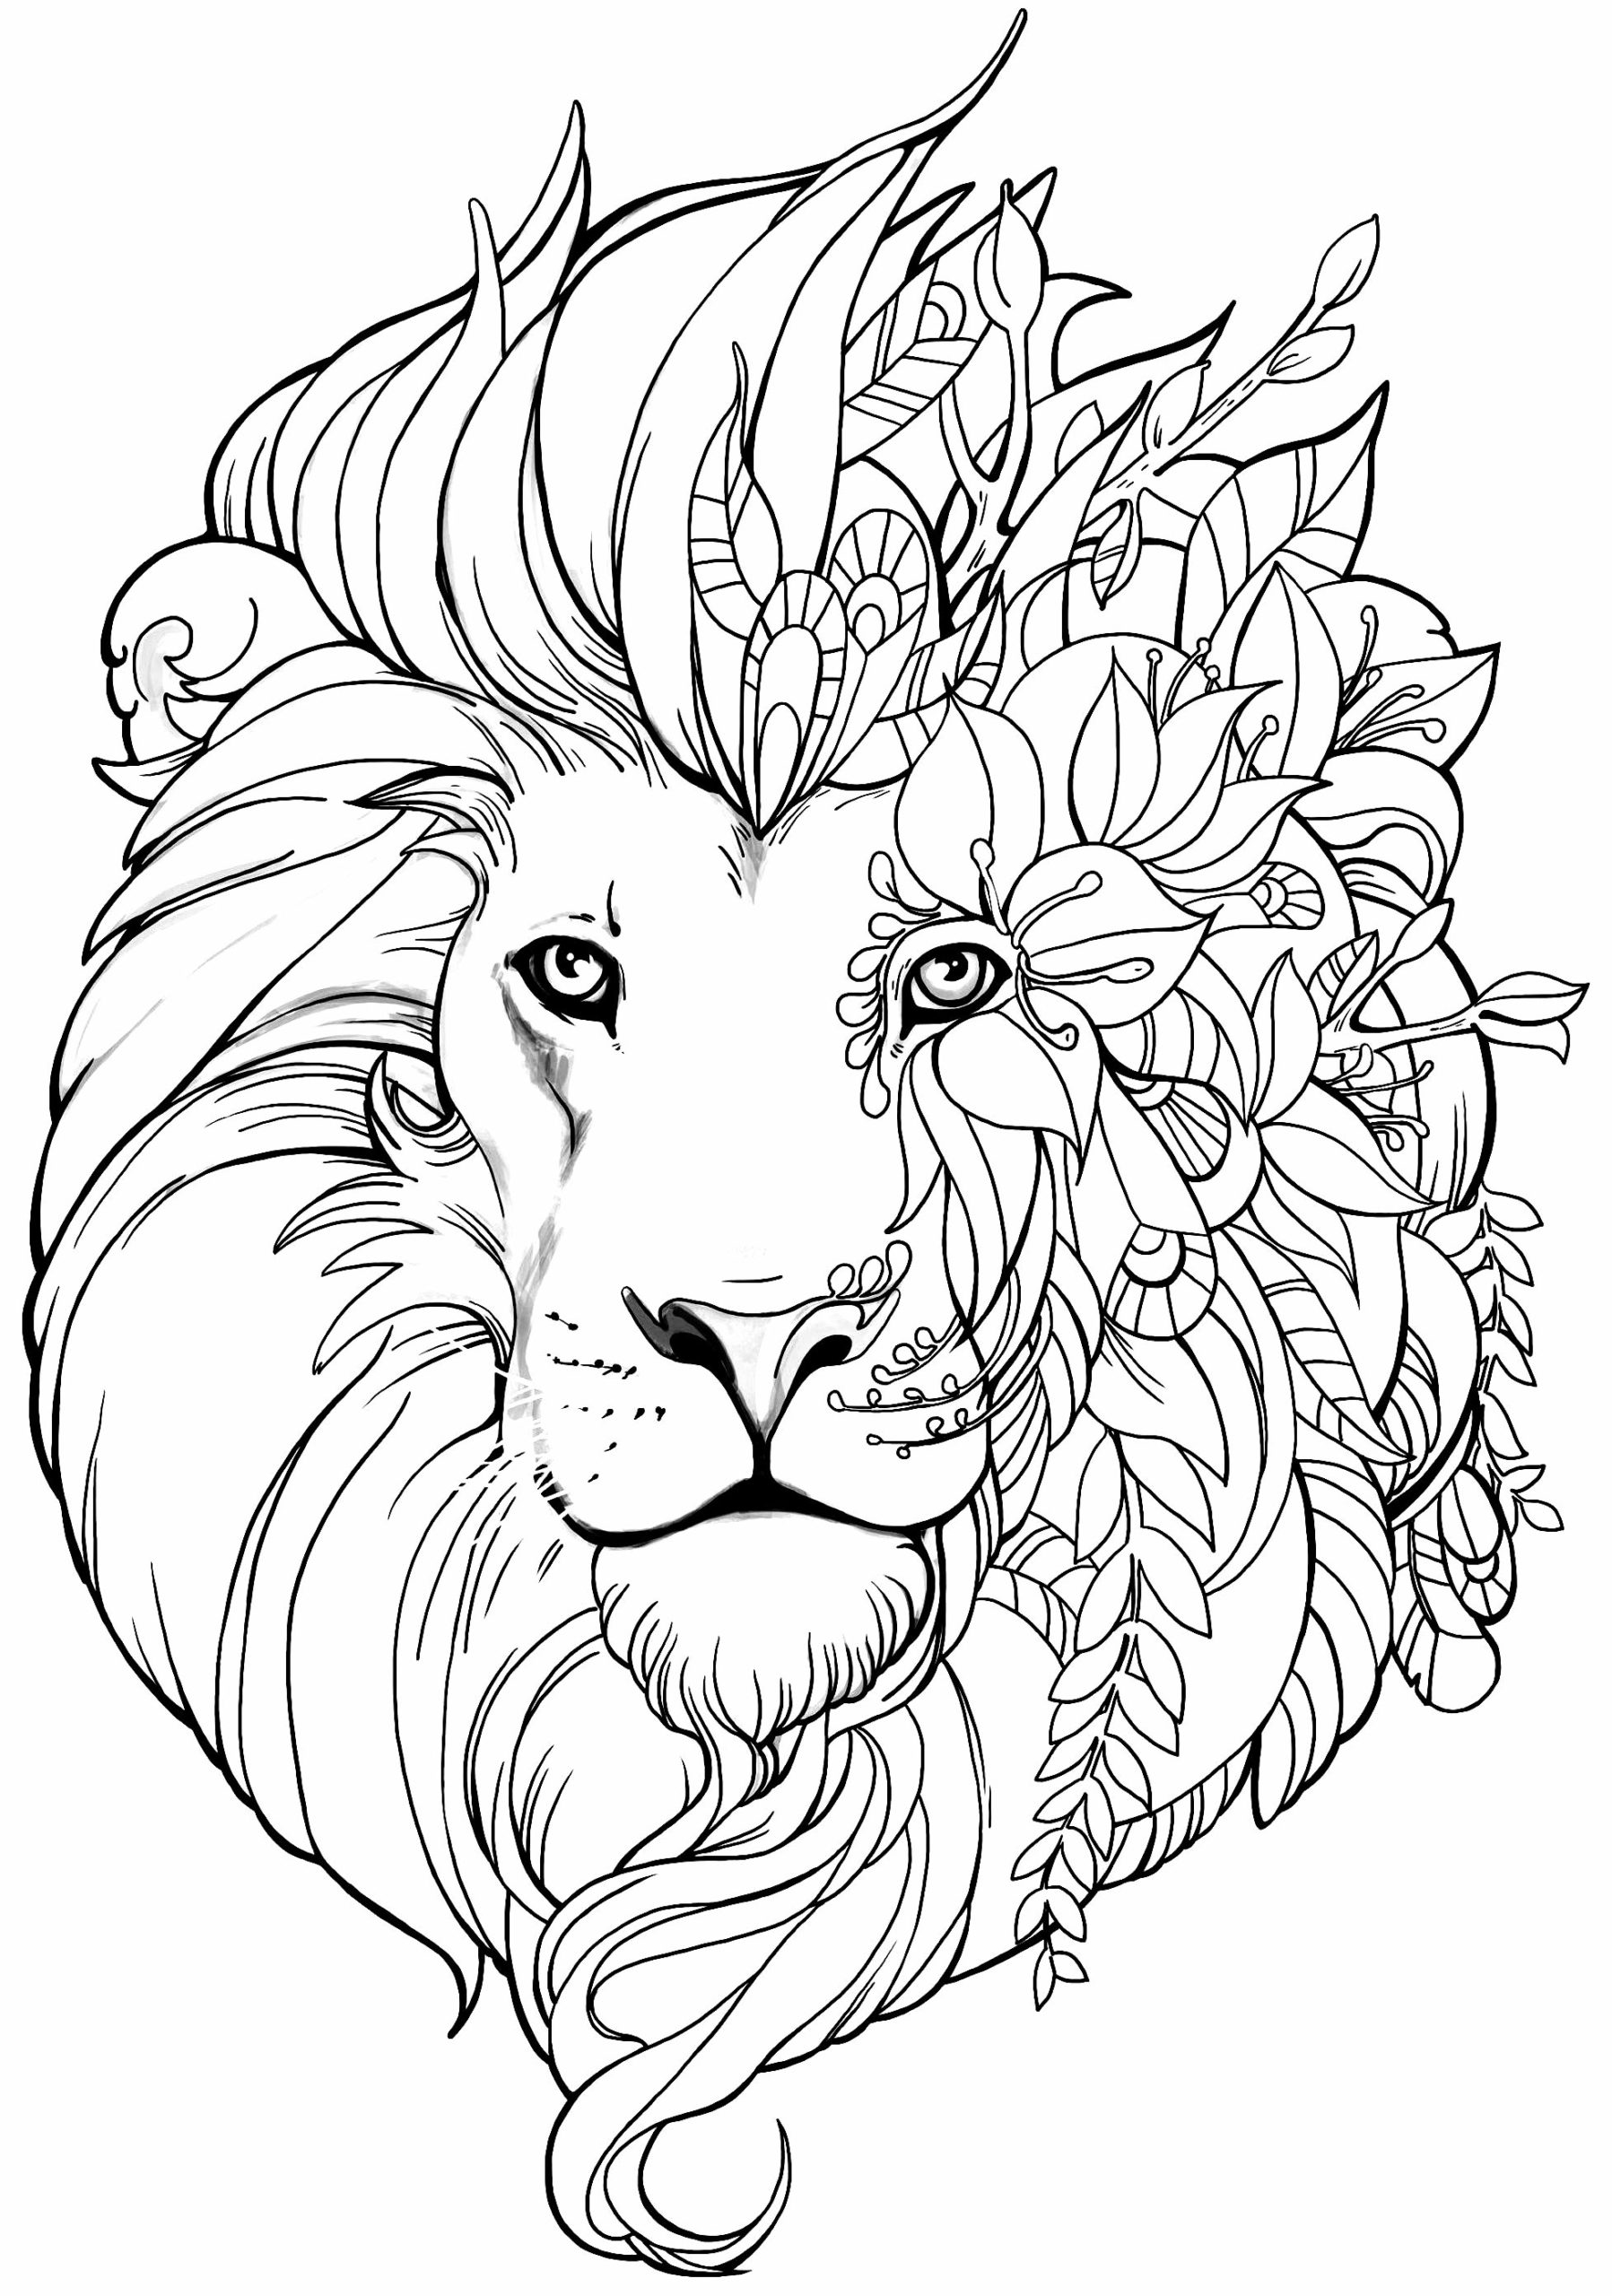 Imagem de leão para colorir